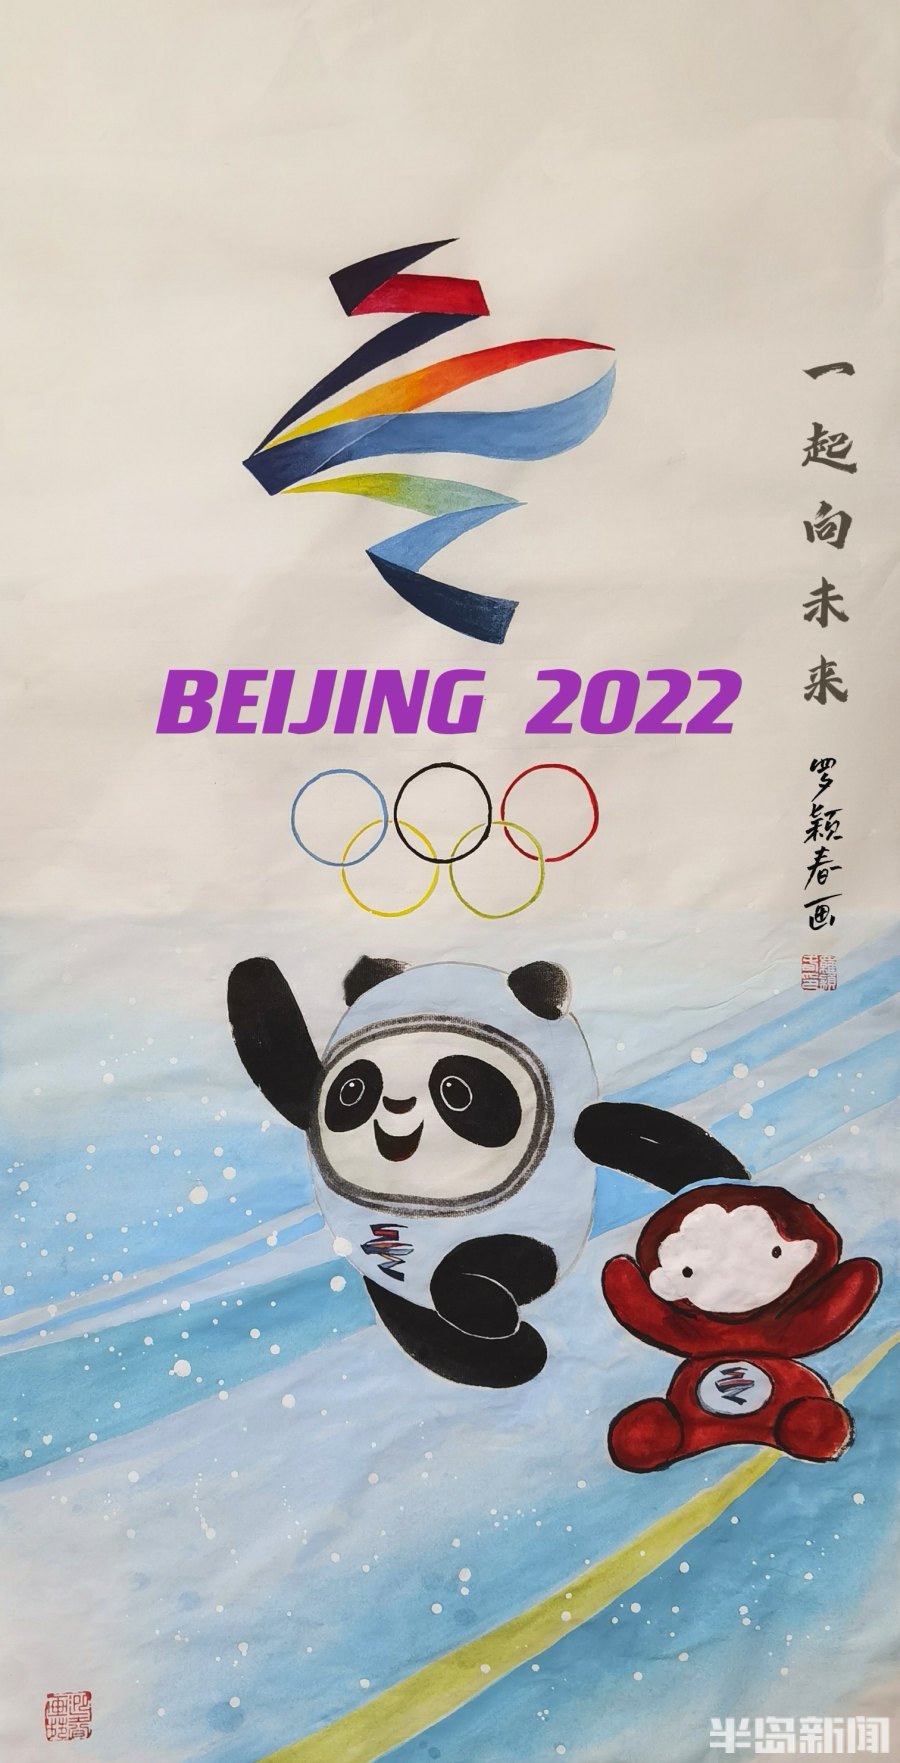 冰墩墩青绿腰都来了青岛市老年大学喜迎北京冬奥会作品展示④